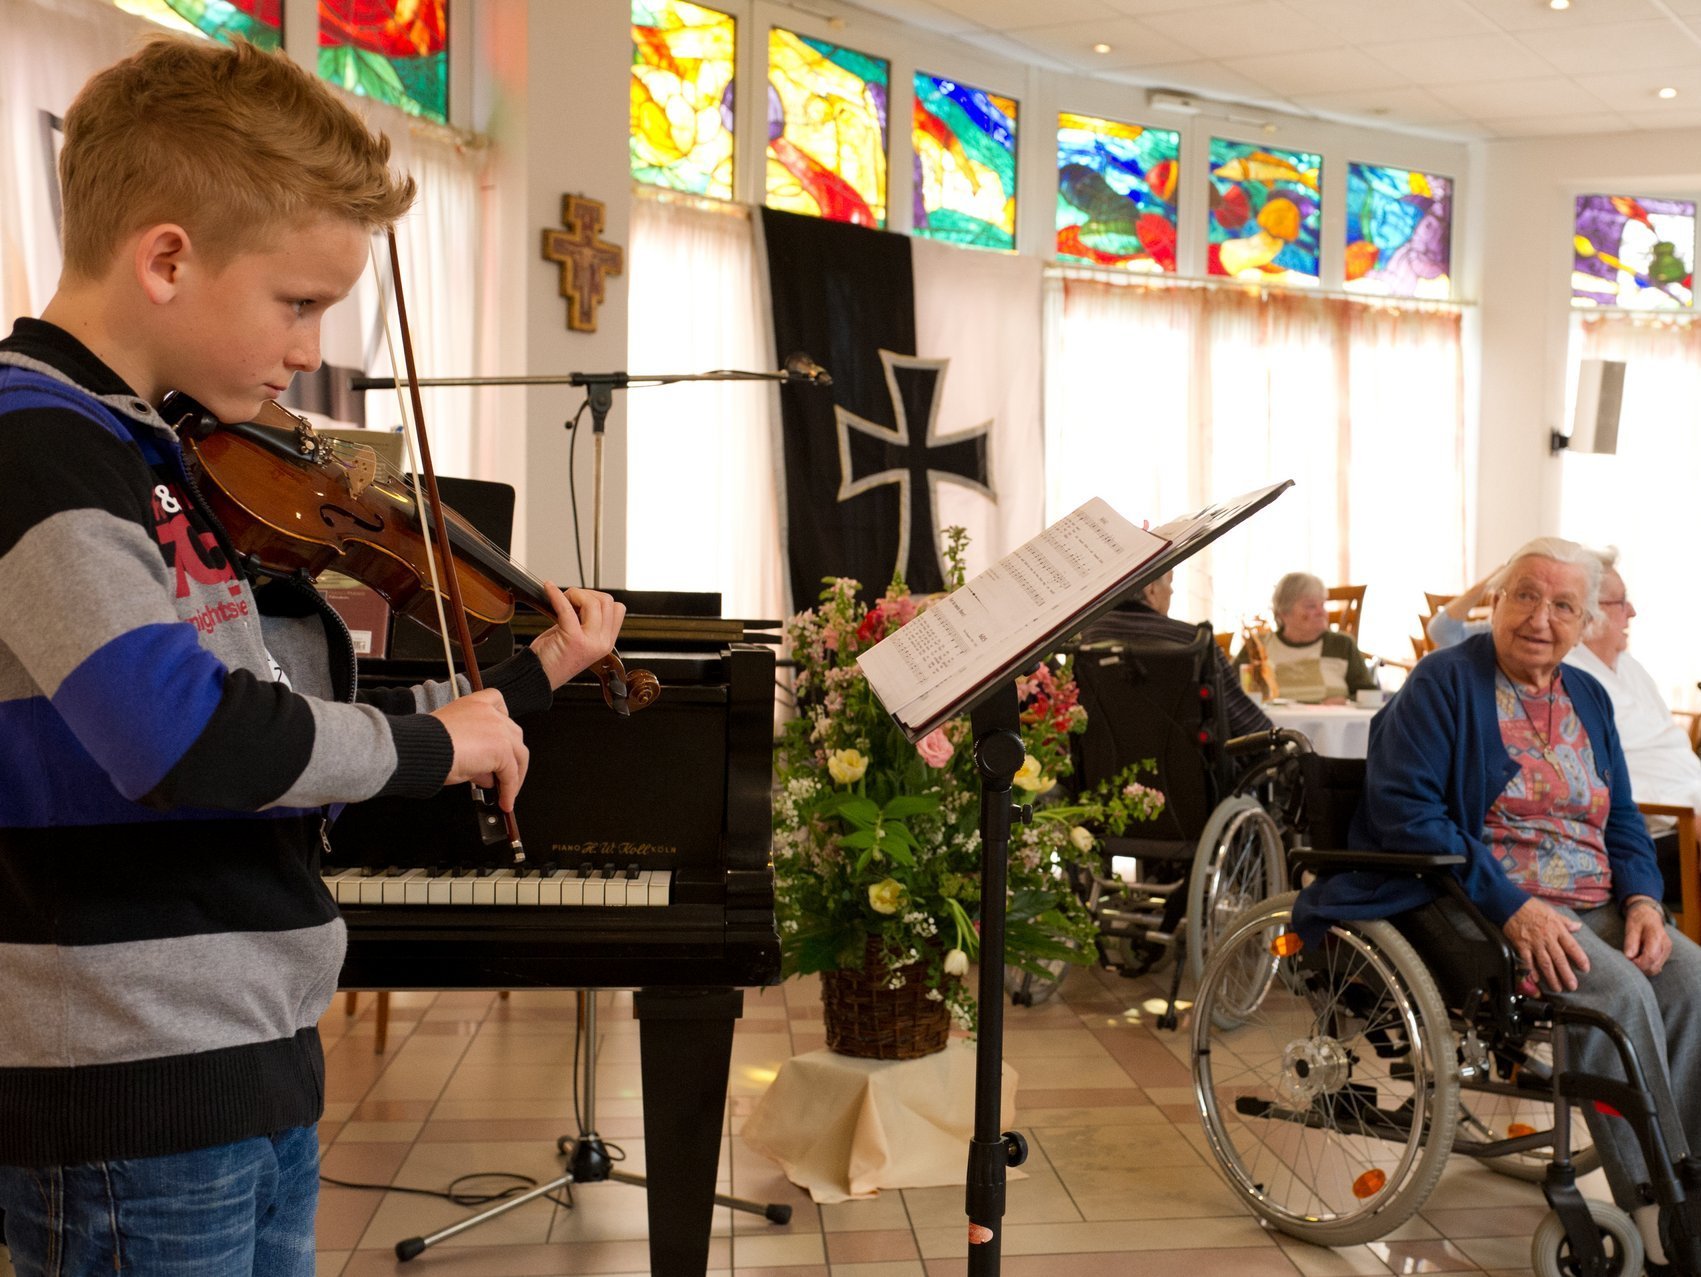 Konzert im Speisesaal: ein Junge spielt Geige vor einem Notenständer - die Bewohner lauschen